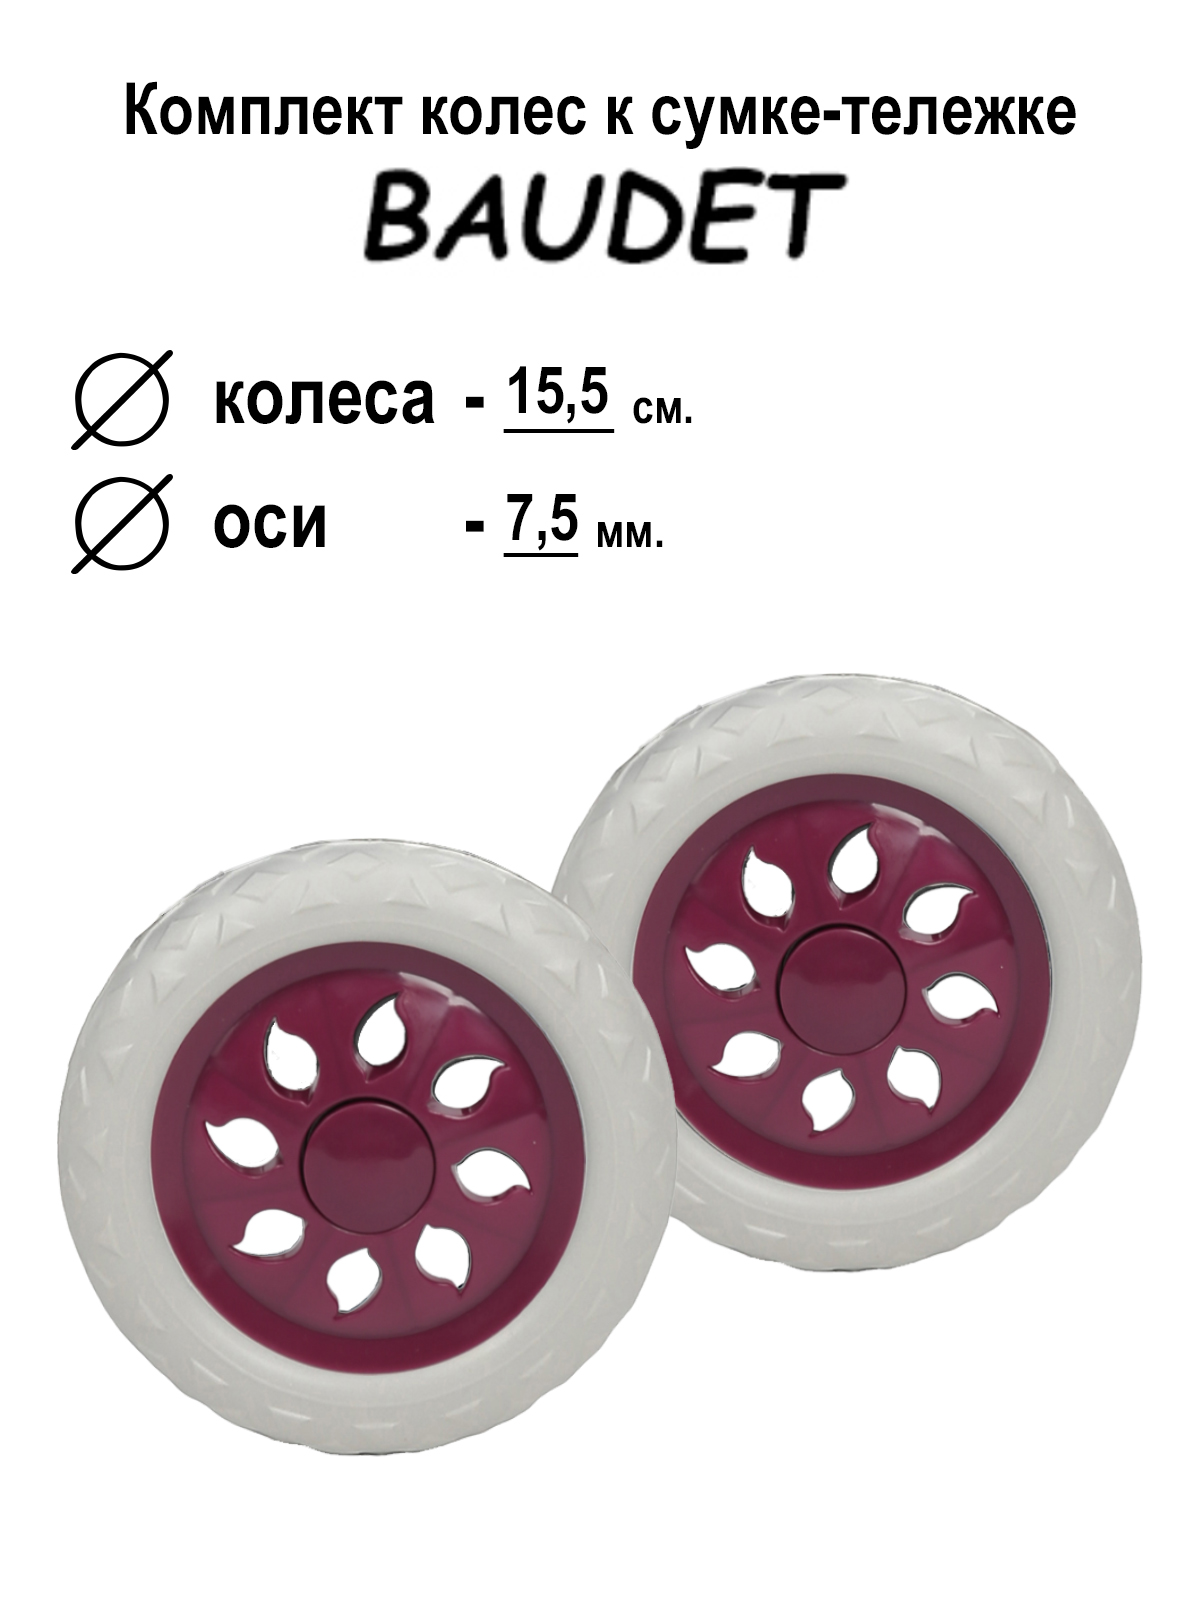 фото Комплект колес для сумки-тележки хозяйственной baudet 007 темно-фиолетовый